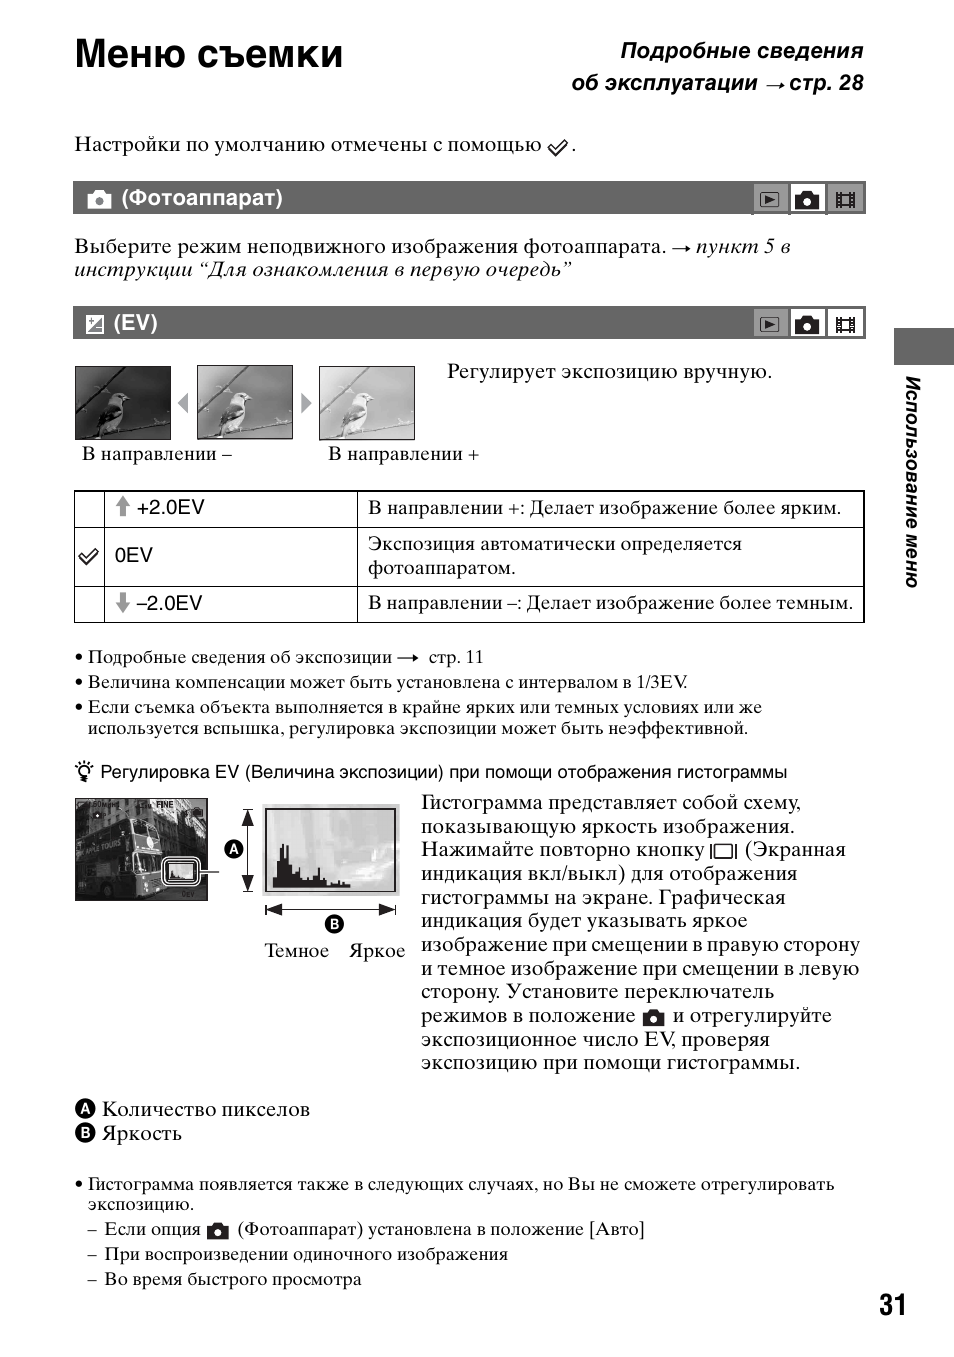 Меню съемки, Фотоаппарат) | Инструкция по эксплуатации Sony DSC-T5 | Страница 31 / 123